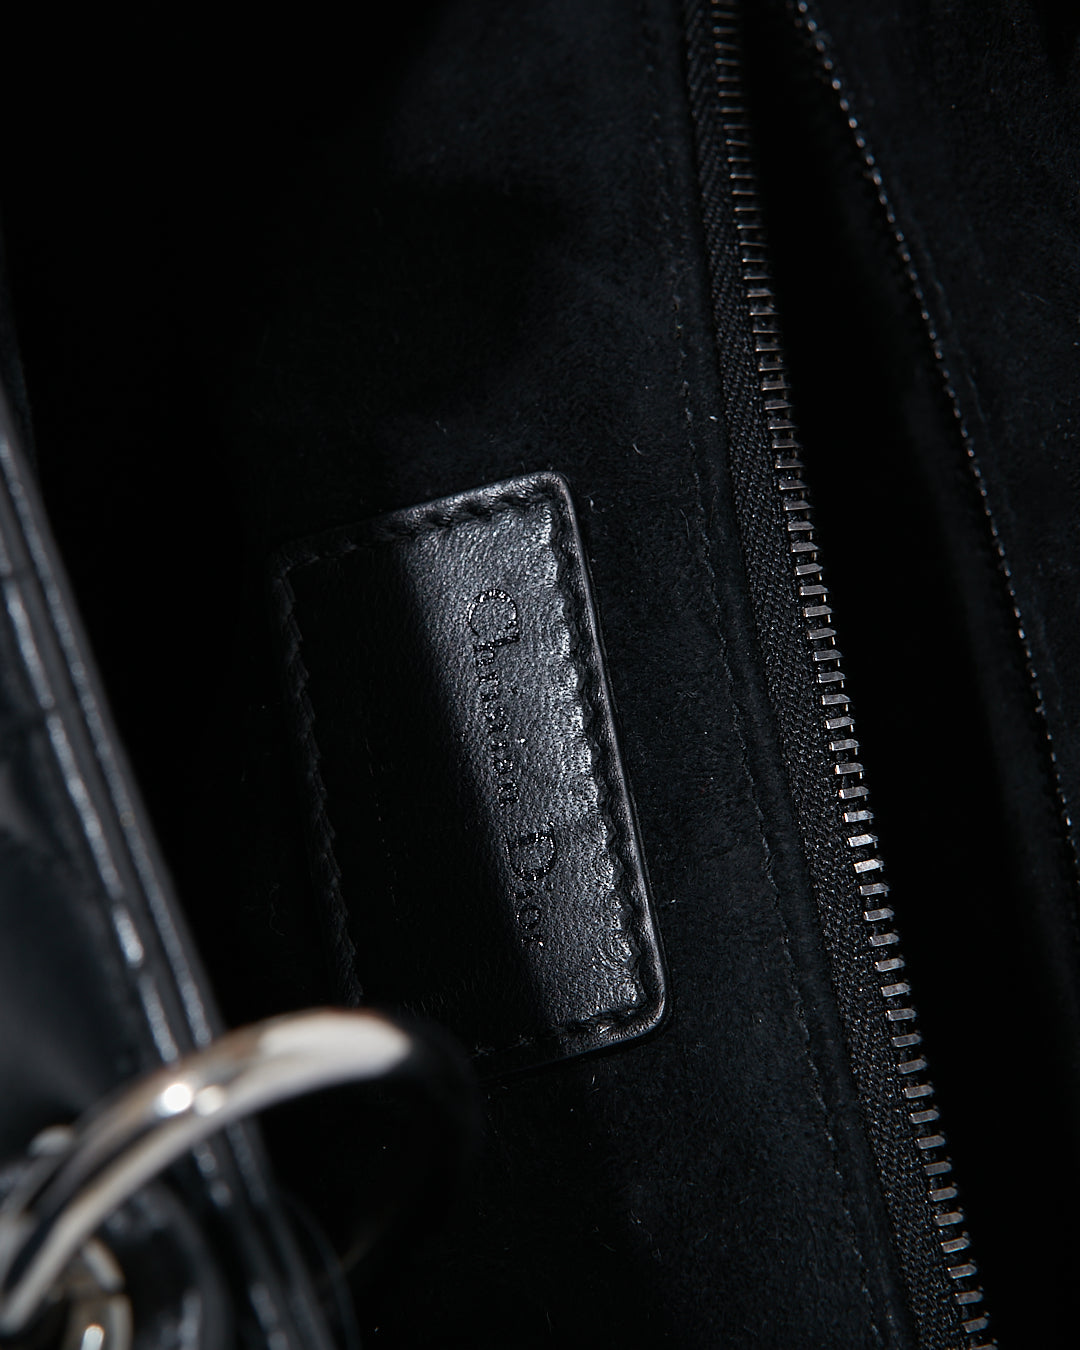 Dior Black Cannage Lambskin Leather Medium Lady Dior Bag w/ Gun Metal HWD